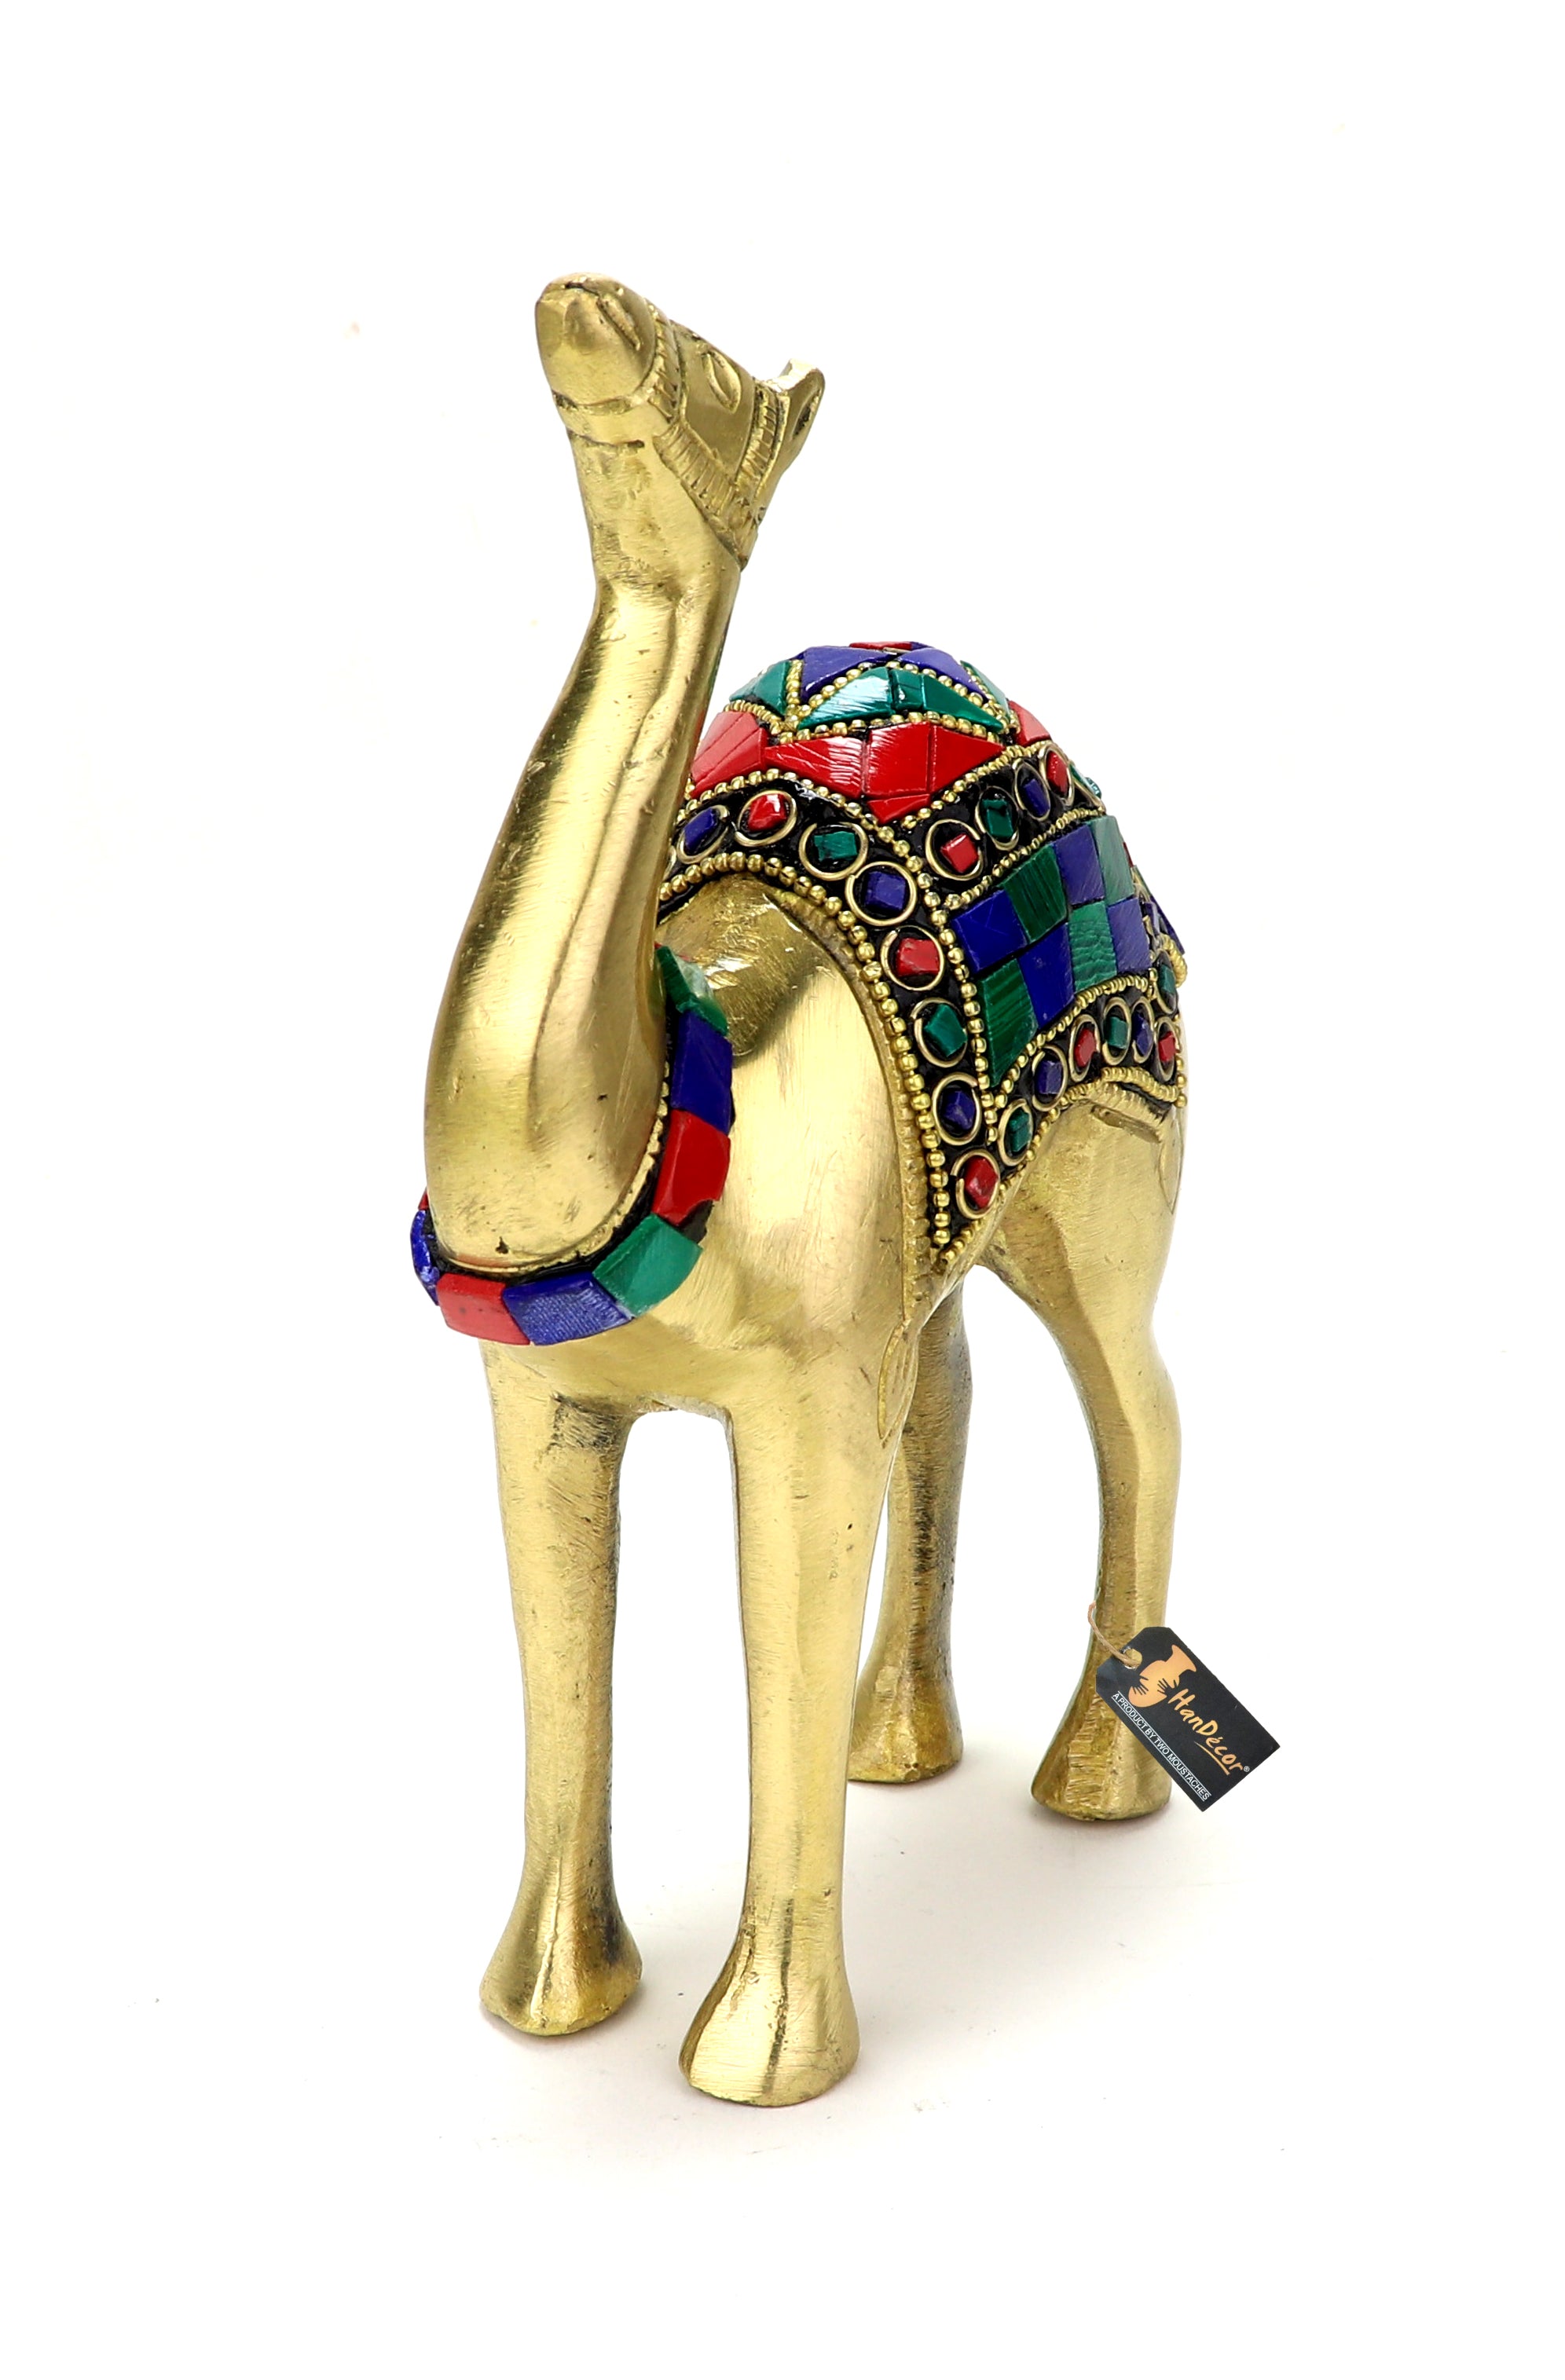 Gemstone Work 6 Inches Brass Camel Showpiece